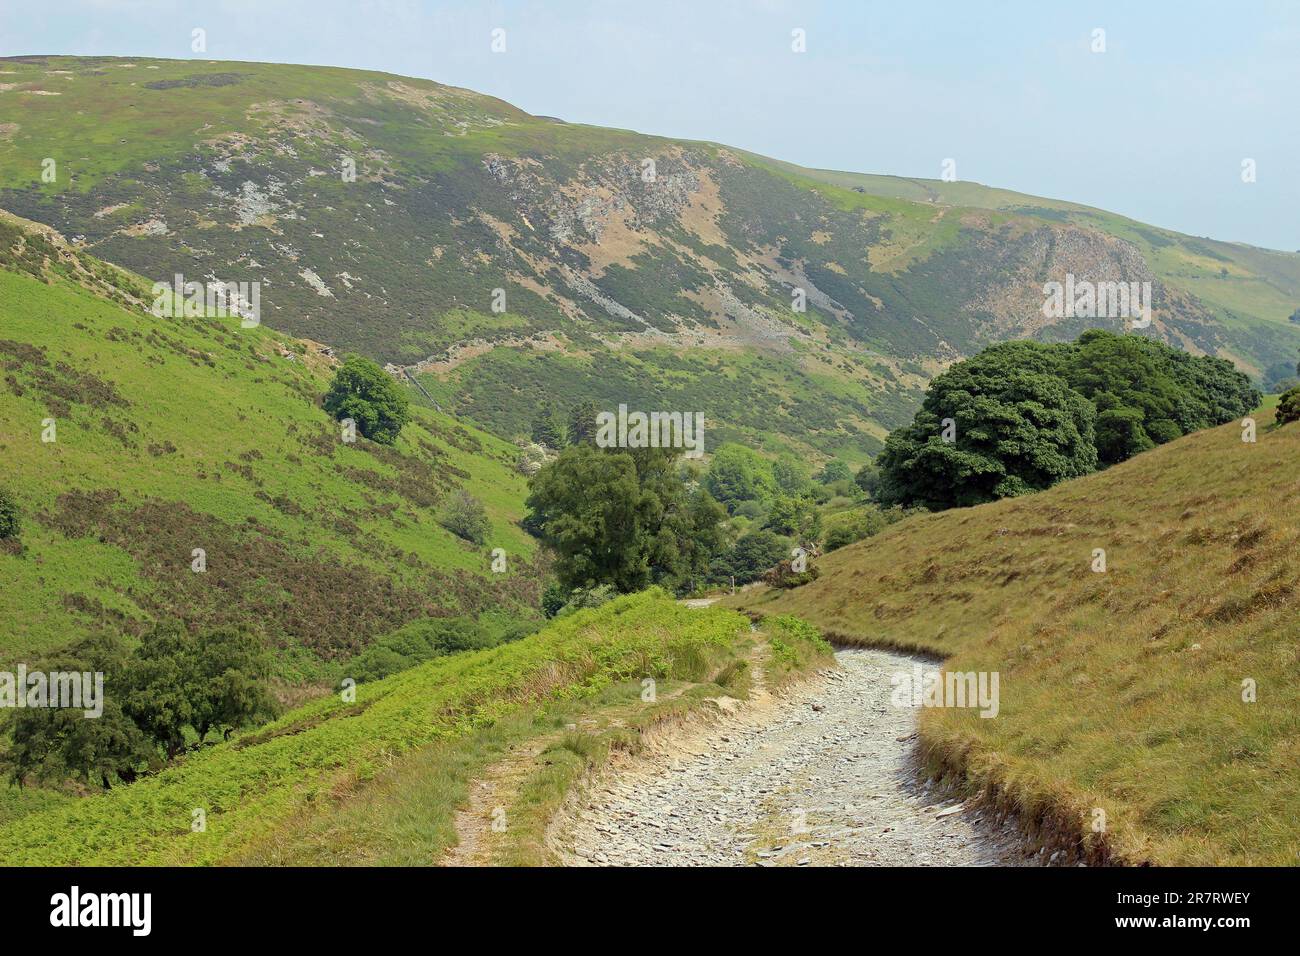 Sentiero nelle Berwyns sopra il villaggio di entre Bach, Valle di Ceiriog, Galles - Graig Fawr in lontananza Foto Stock